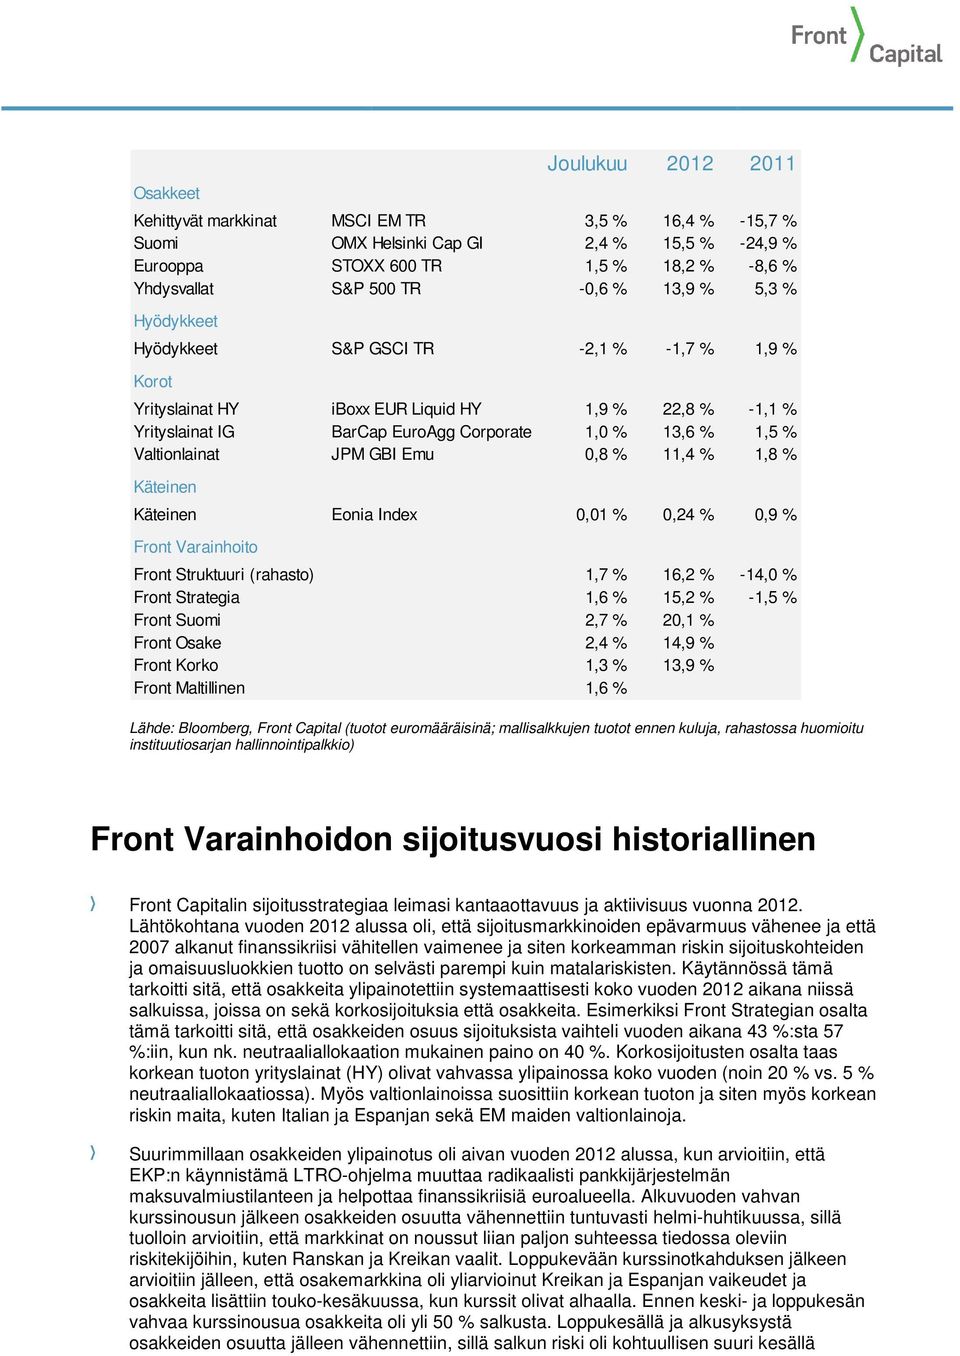 Valtionlainat JPM GBI Emu 0,8 % 11,4 % 1,8 % Käteinen Käteinen Eonia Index 0,01 % 0,24 % 0,9 % Front Varainhoito Front Struktuuri (rahasto) 1,7 % 16,2 % -14,0 % Front Strategia 1,6 % 15,2 % -1,5 %